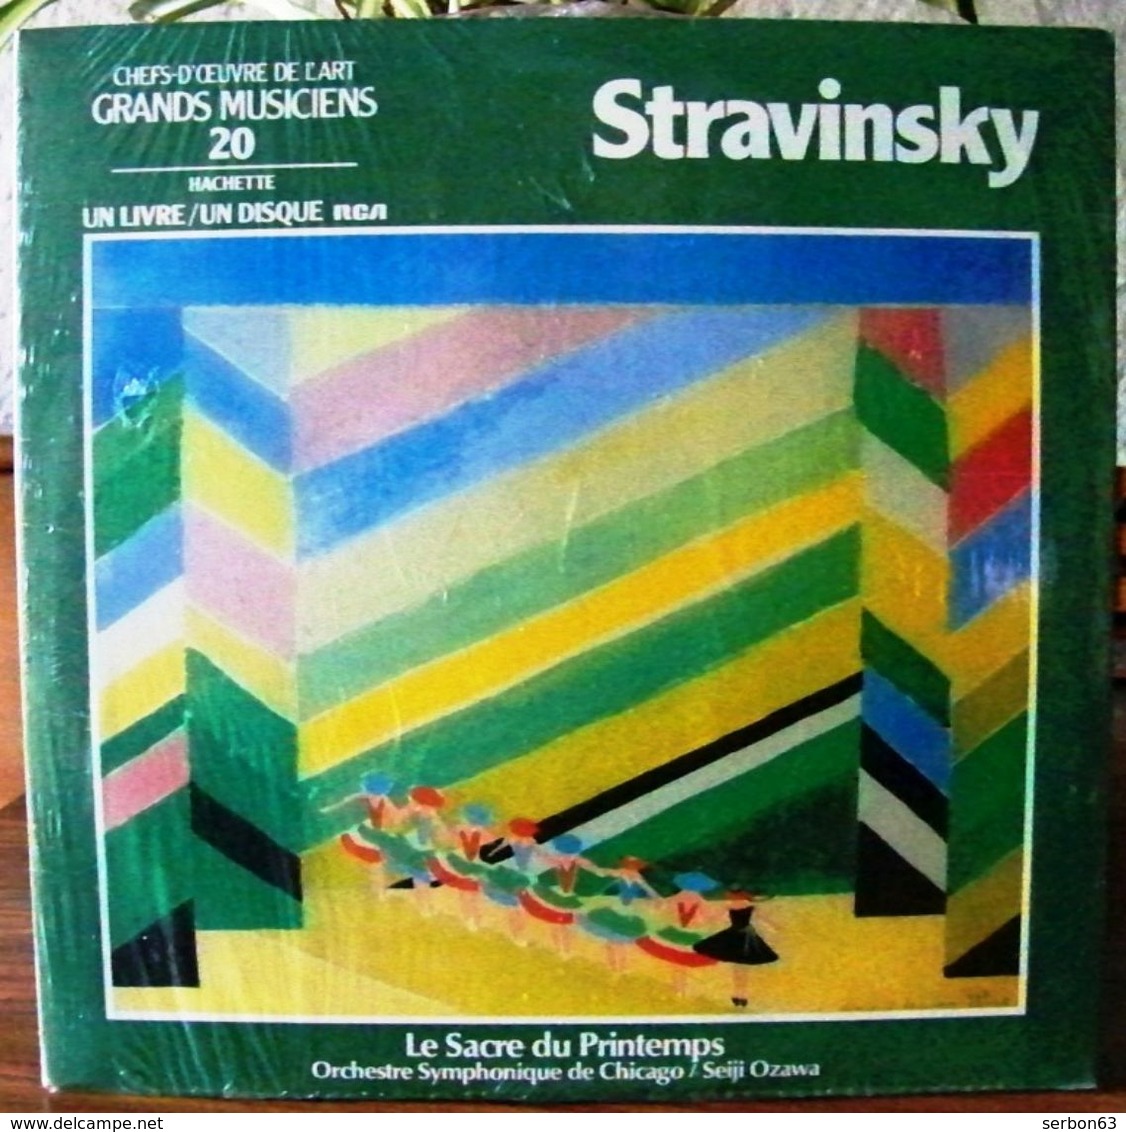 33 TOURS N° 20 VINYLE GRANDS MUSICIENS 1 LIVRE + 1 DISQUE 1990 NEUF STRAVINSKY SOUS PLASTIQUE D'ORIGINE - SITE Serbon63 - Classical